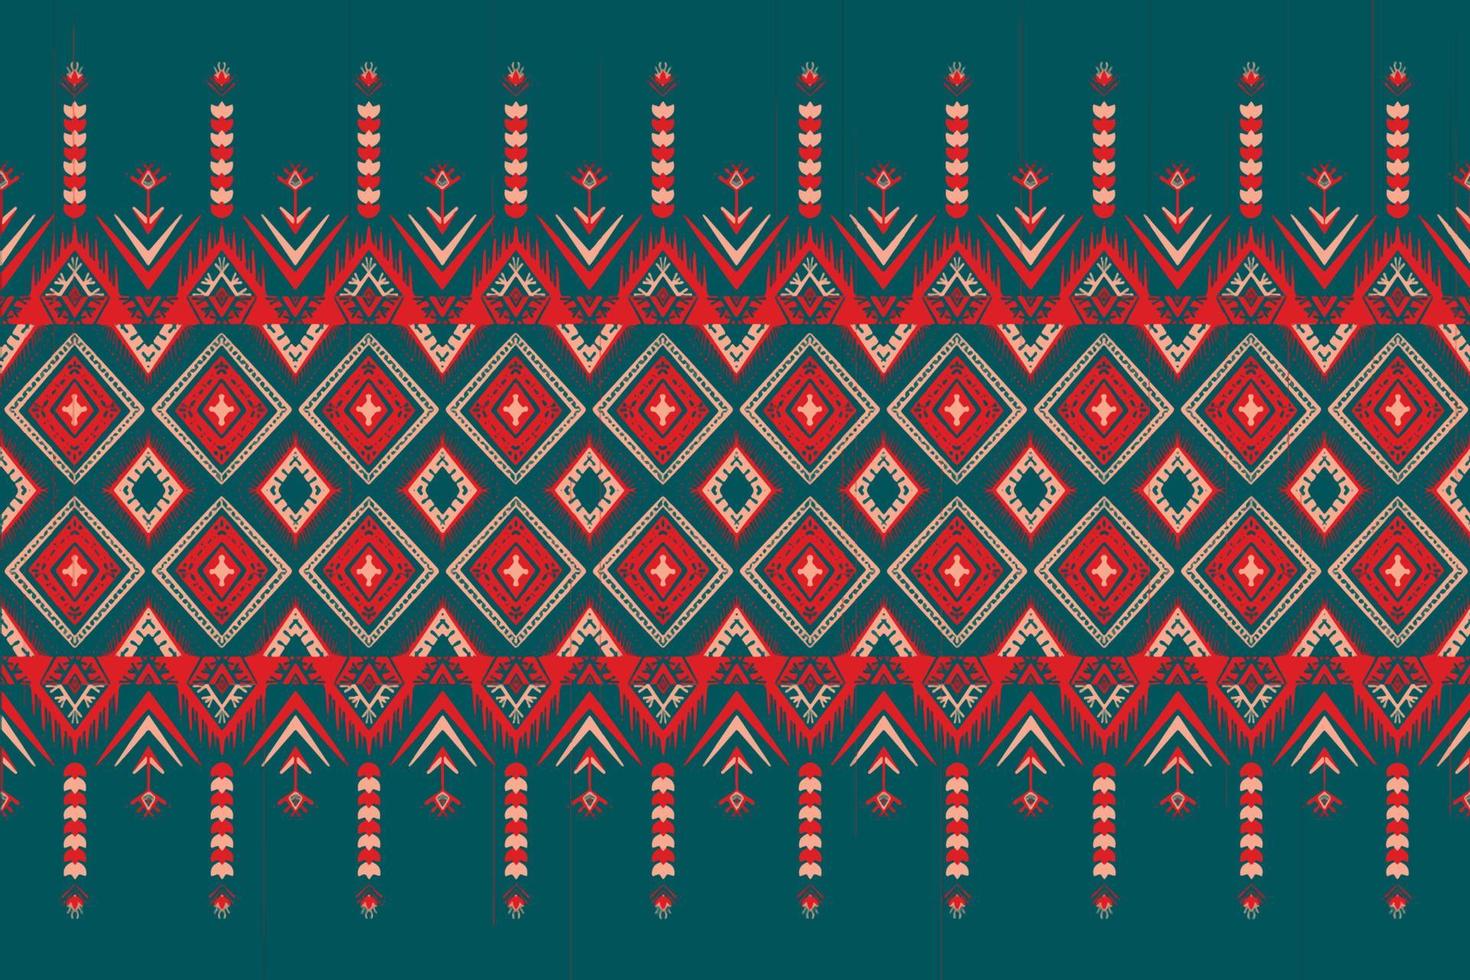 röd och orange blomma på blå kricka. geometriskt etniskt orientaliskt mönster traditionell design för bakgrund, matta, tapeter, kläder, omslag, batik, tyg, vektorillustration broderistil vektor